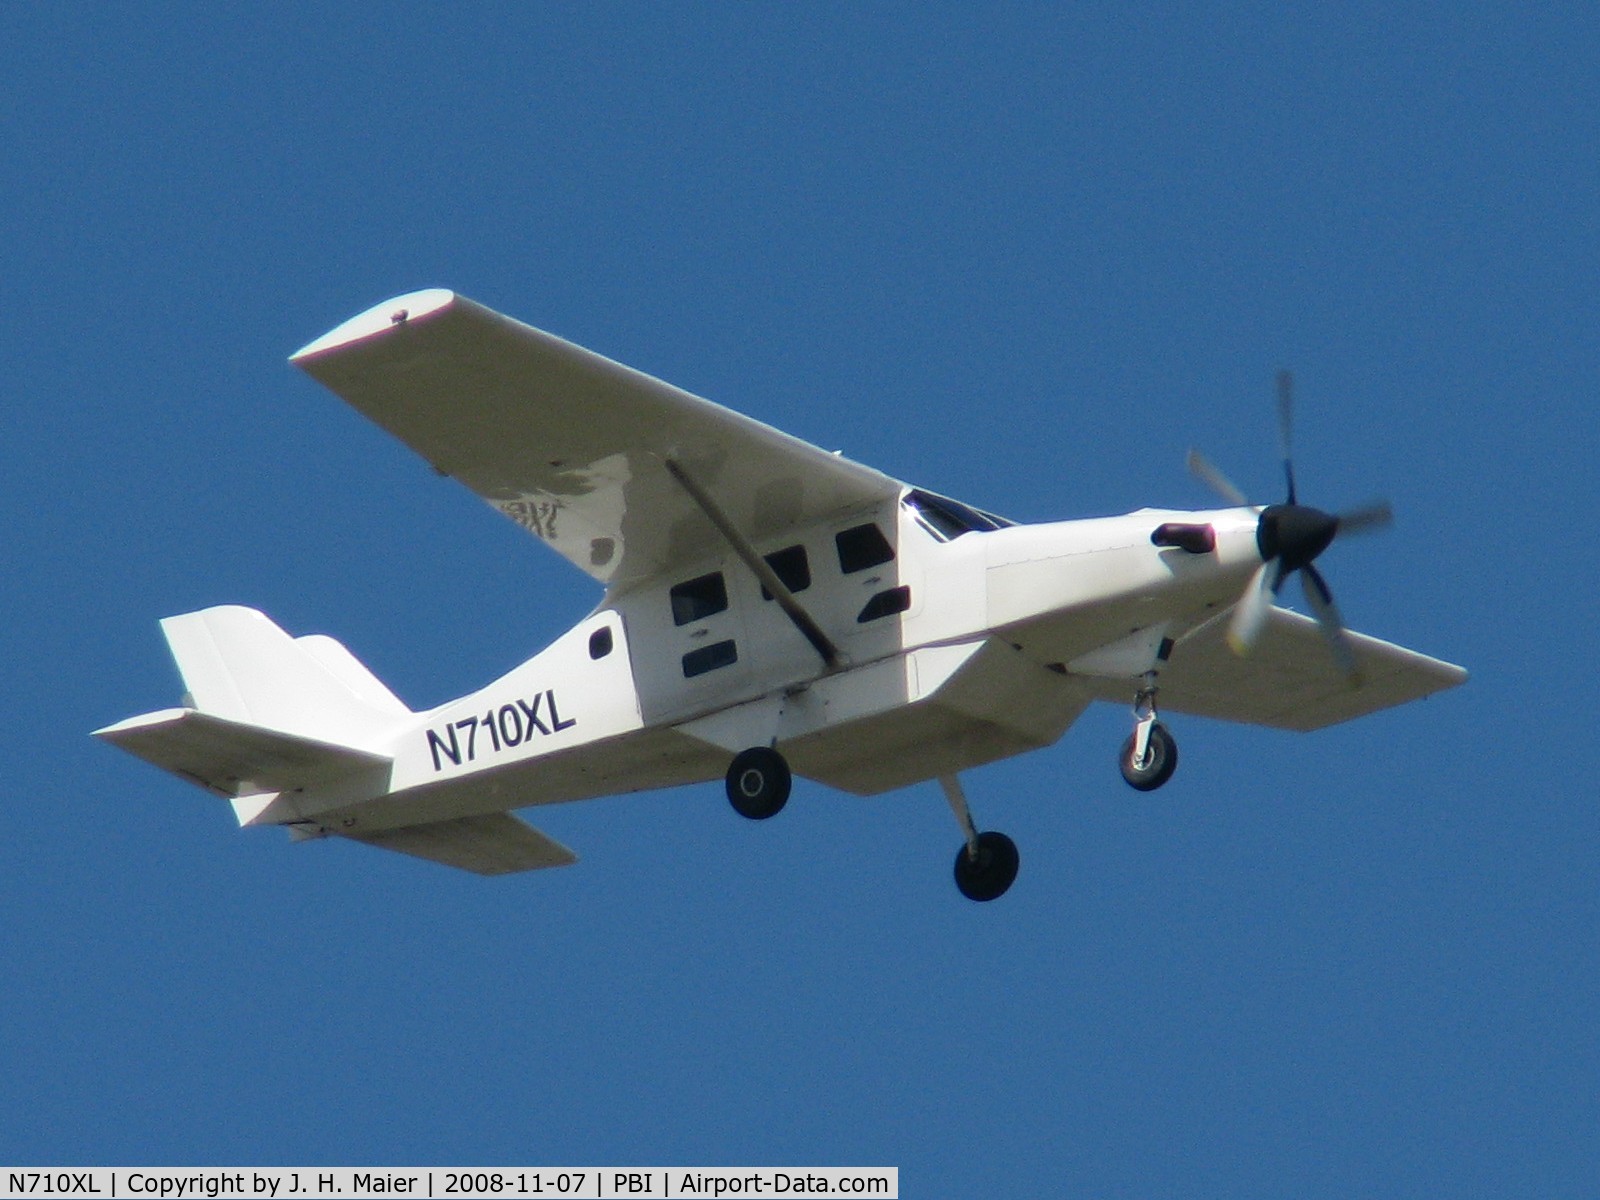 N710XL, 2005 Comp Air 10 XL C/N 0410XL0301, departing PBI 9L